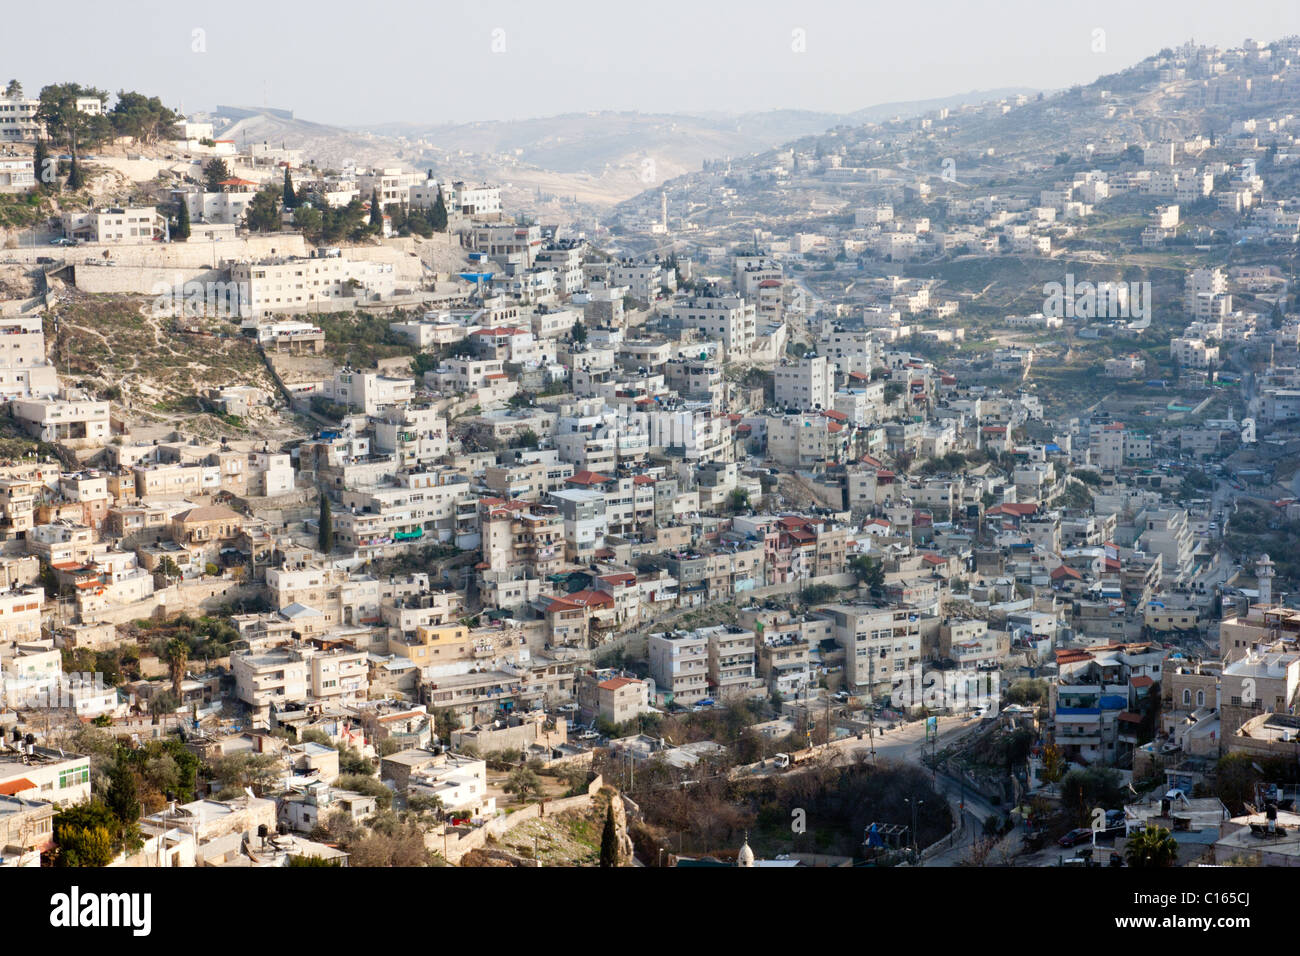 Vue depuis les remparts de la vieille ville de Jérusalem-Est. Israël Banque D'Images